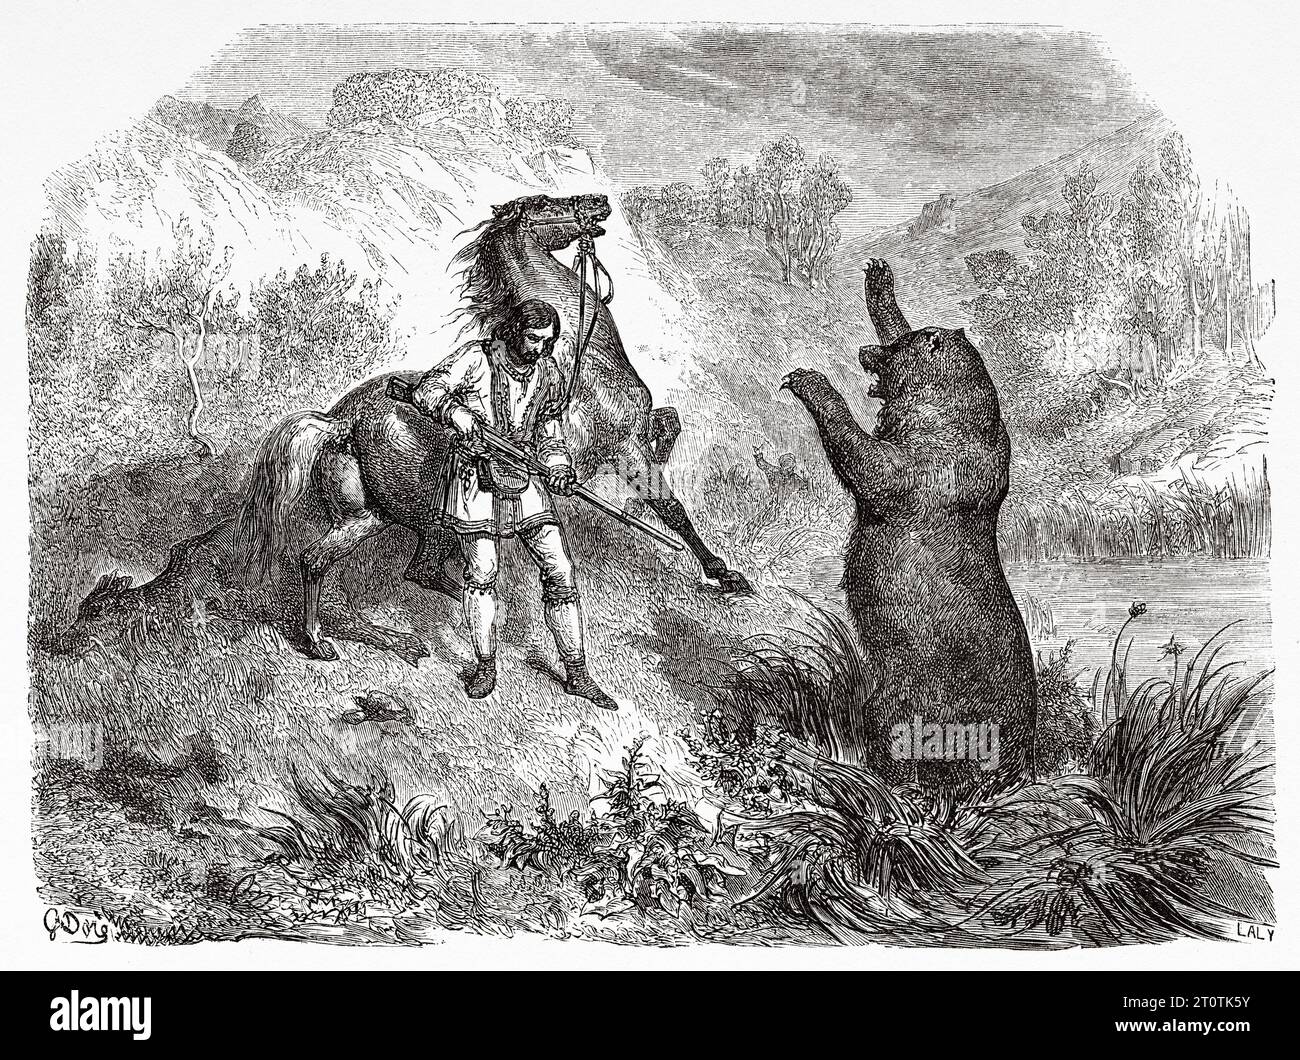 Scène de chasse à l'ours, USA. Exploration des montagnes Rocheuses en 1857-1859 par le capitaine John Palliser. Gravure ancienne du 19e siècle du Tour du monde 1860 Banque D'Images